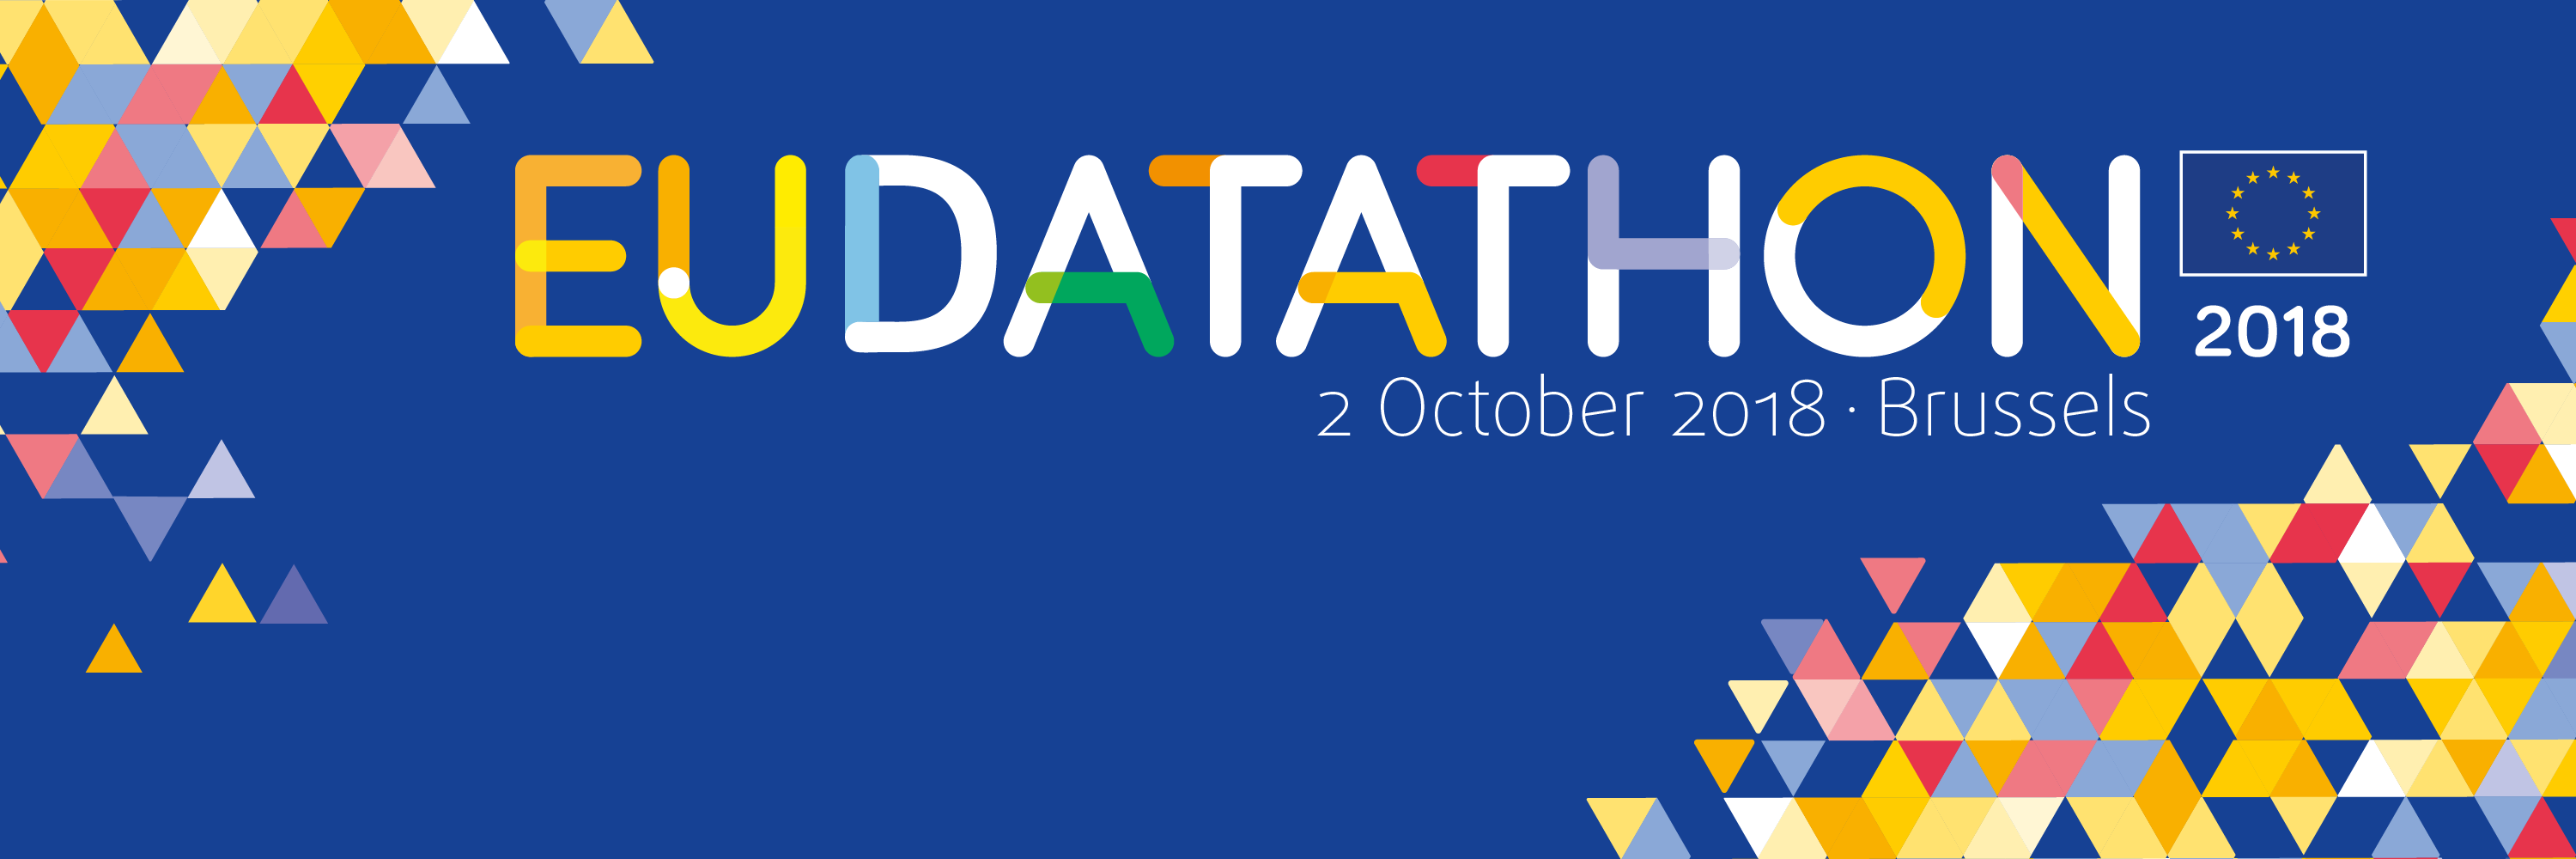 EU Datathon 2018 Twitter banner